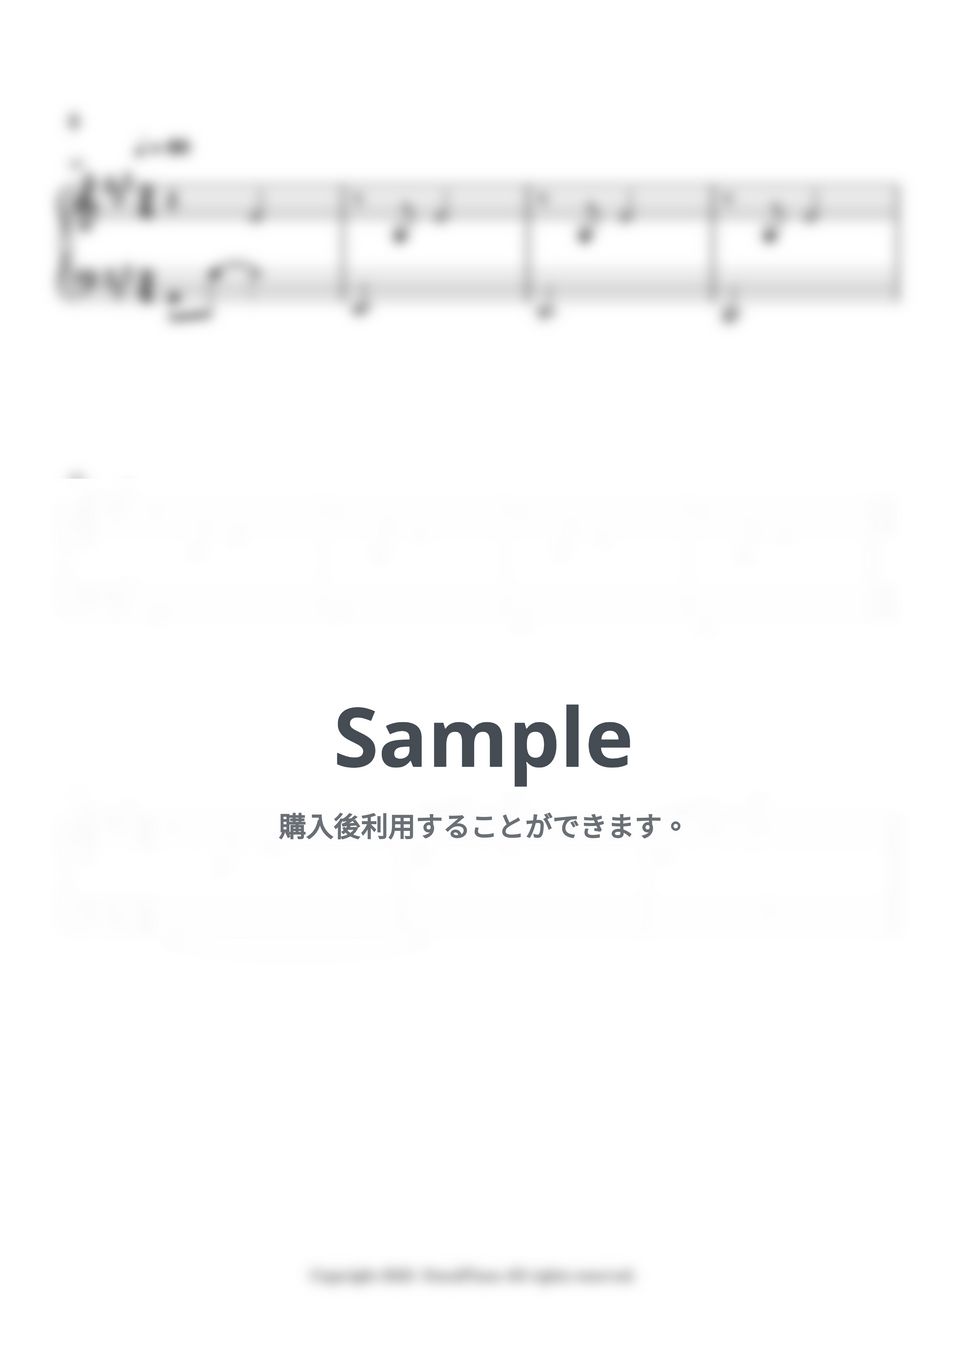 Joe Hisaishi - 思春期 (Adolescence) (君たちはどう生きるか OST track 7) by 今日ピアノ(Oneul Piano)